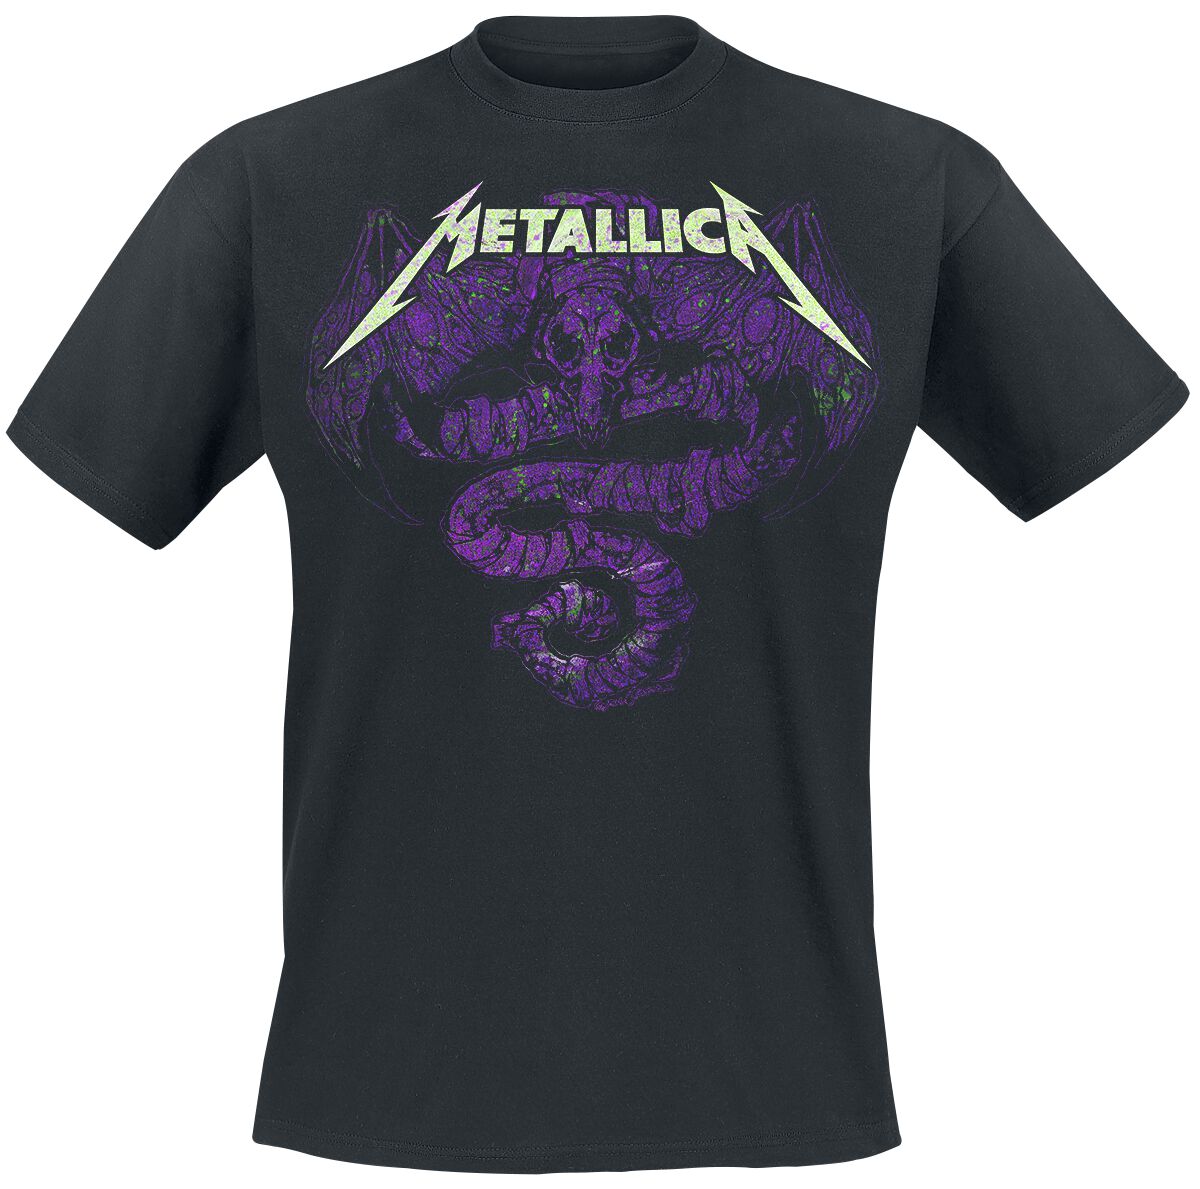 Metallica T-Shirt - Roam Oxidized - M bis XXL - für Männer - Größe XXL - schwarz  - Lizenziertes Merchandise!